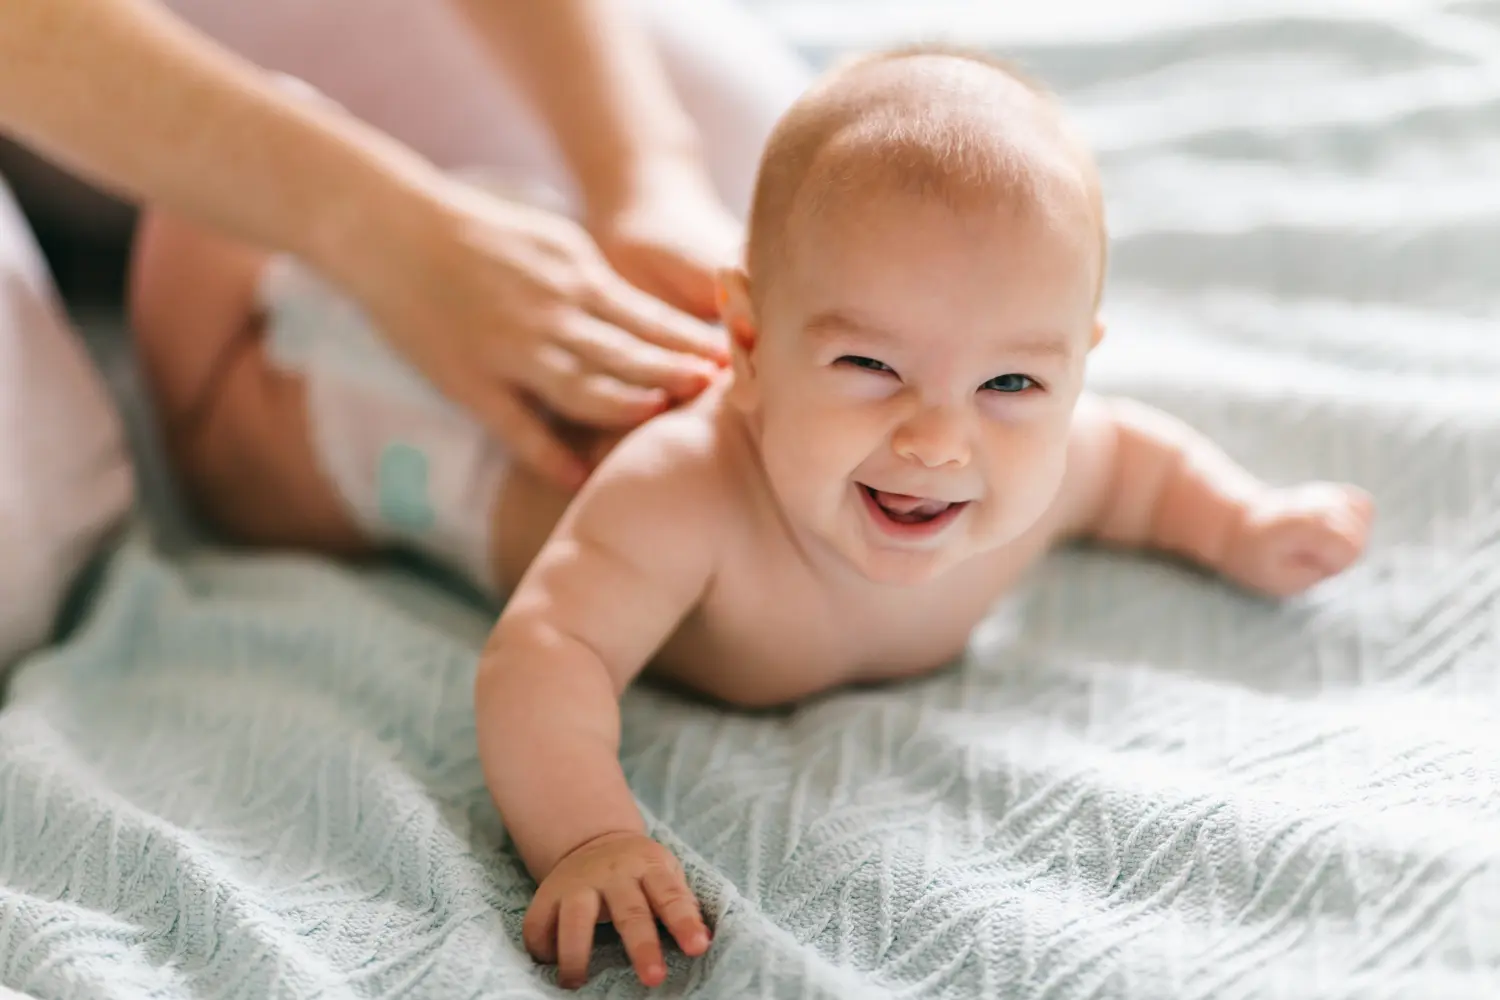 Massage für das Baby. Vier Monate altes Baby lächelt beim Turnen